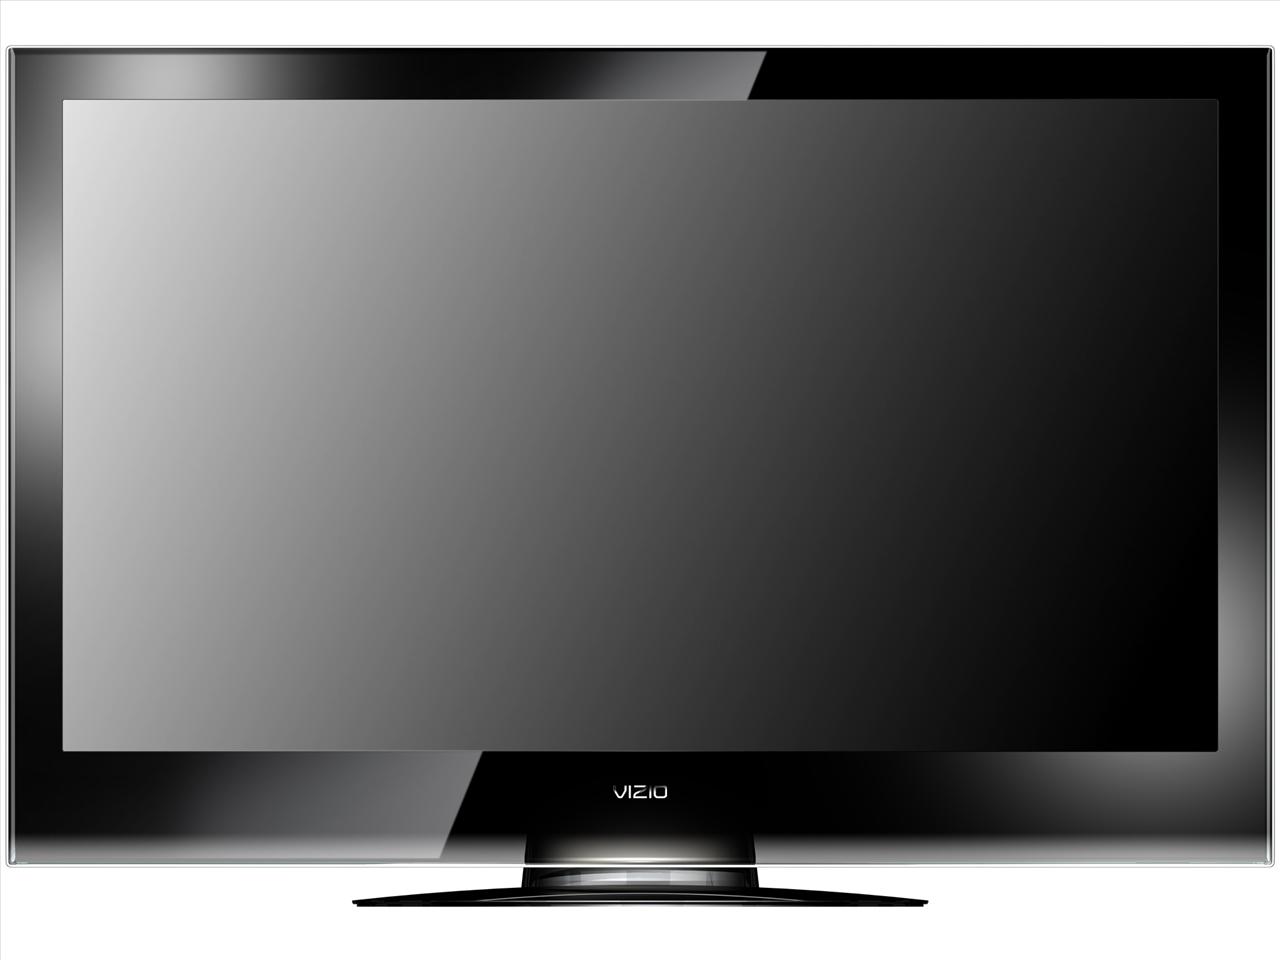 Телевизор самсунг 2012 год. ЖК телевизор сони 42 2010 модель. Телевизор LG Plazma 2010 года. Телевизор Панасоник 2010 года. Телевизор LG 72 дюйма.